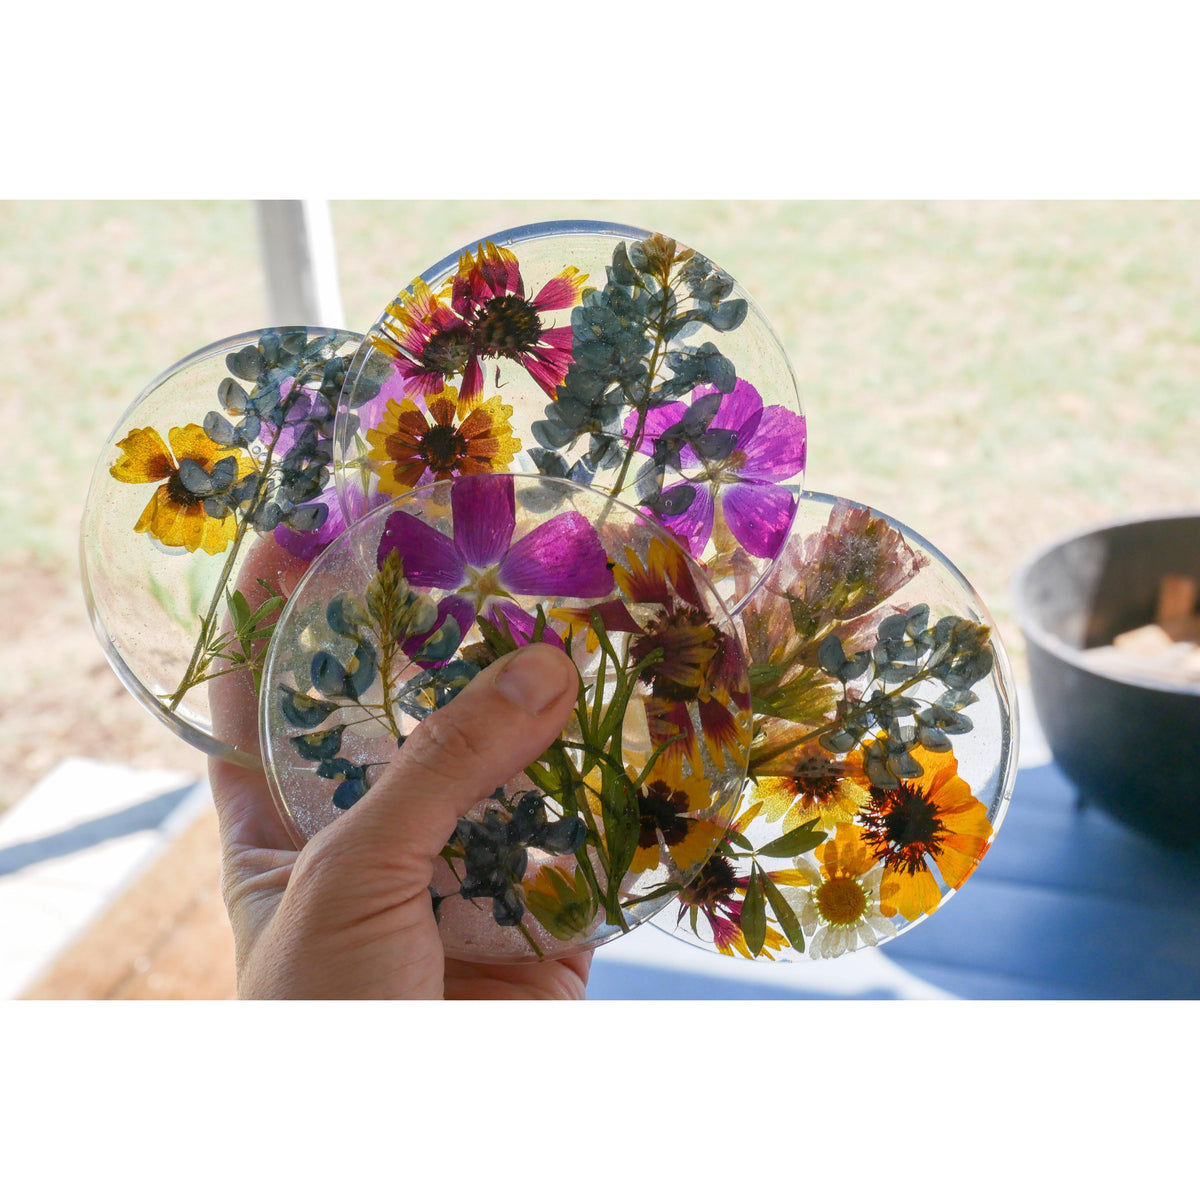 Dry Flowers Packs for Resin in Sri Lanka - Small Box